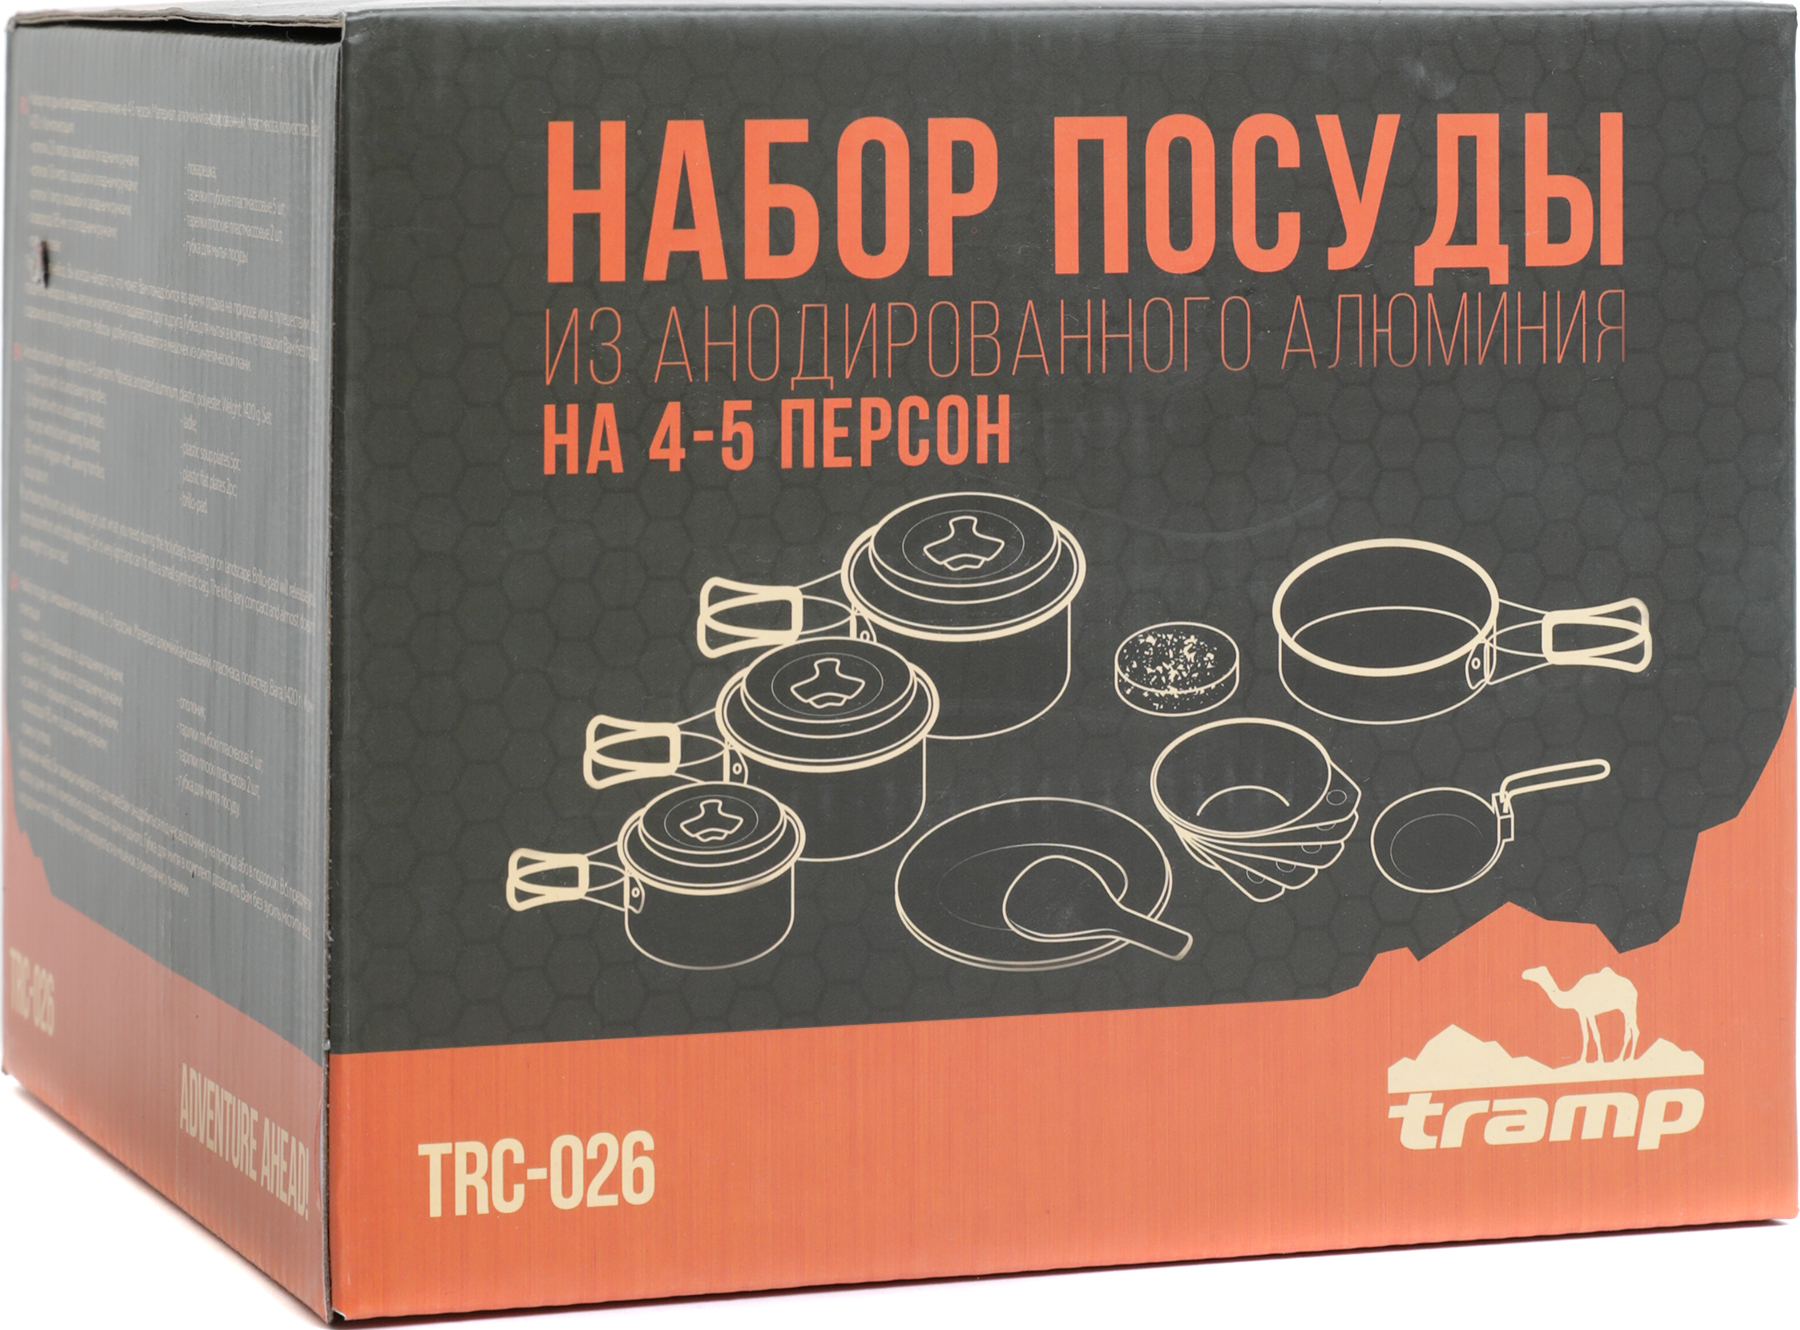 Набор посуды Tramp TRC-026 на 4-5 персон - туристическое снаряжение в Минске. Фото �6